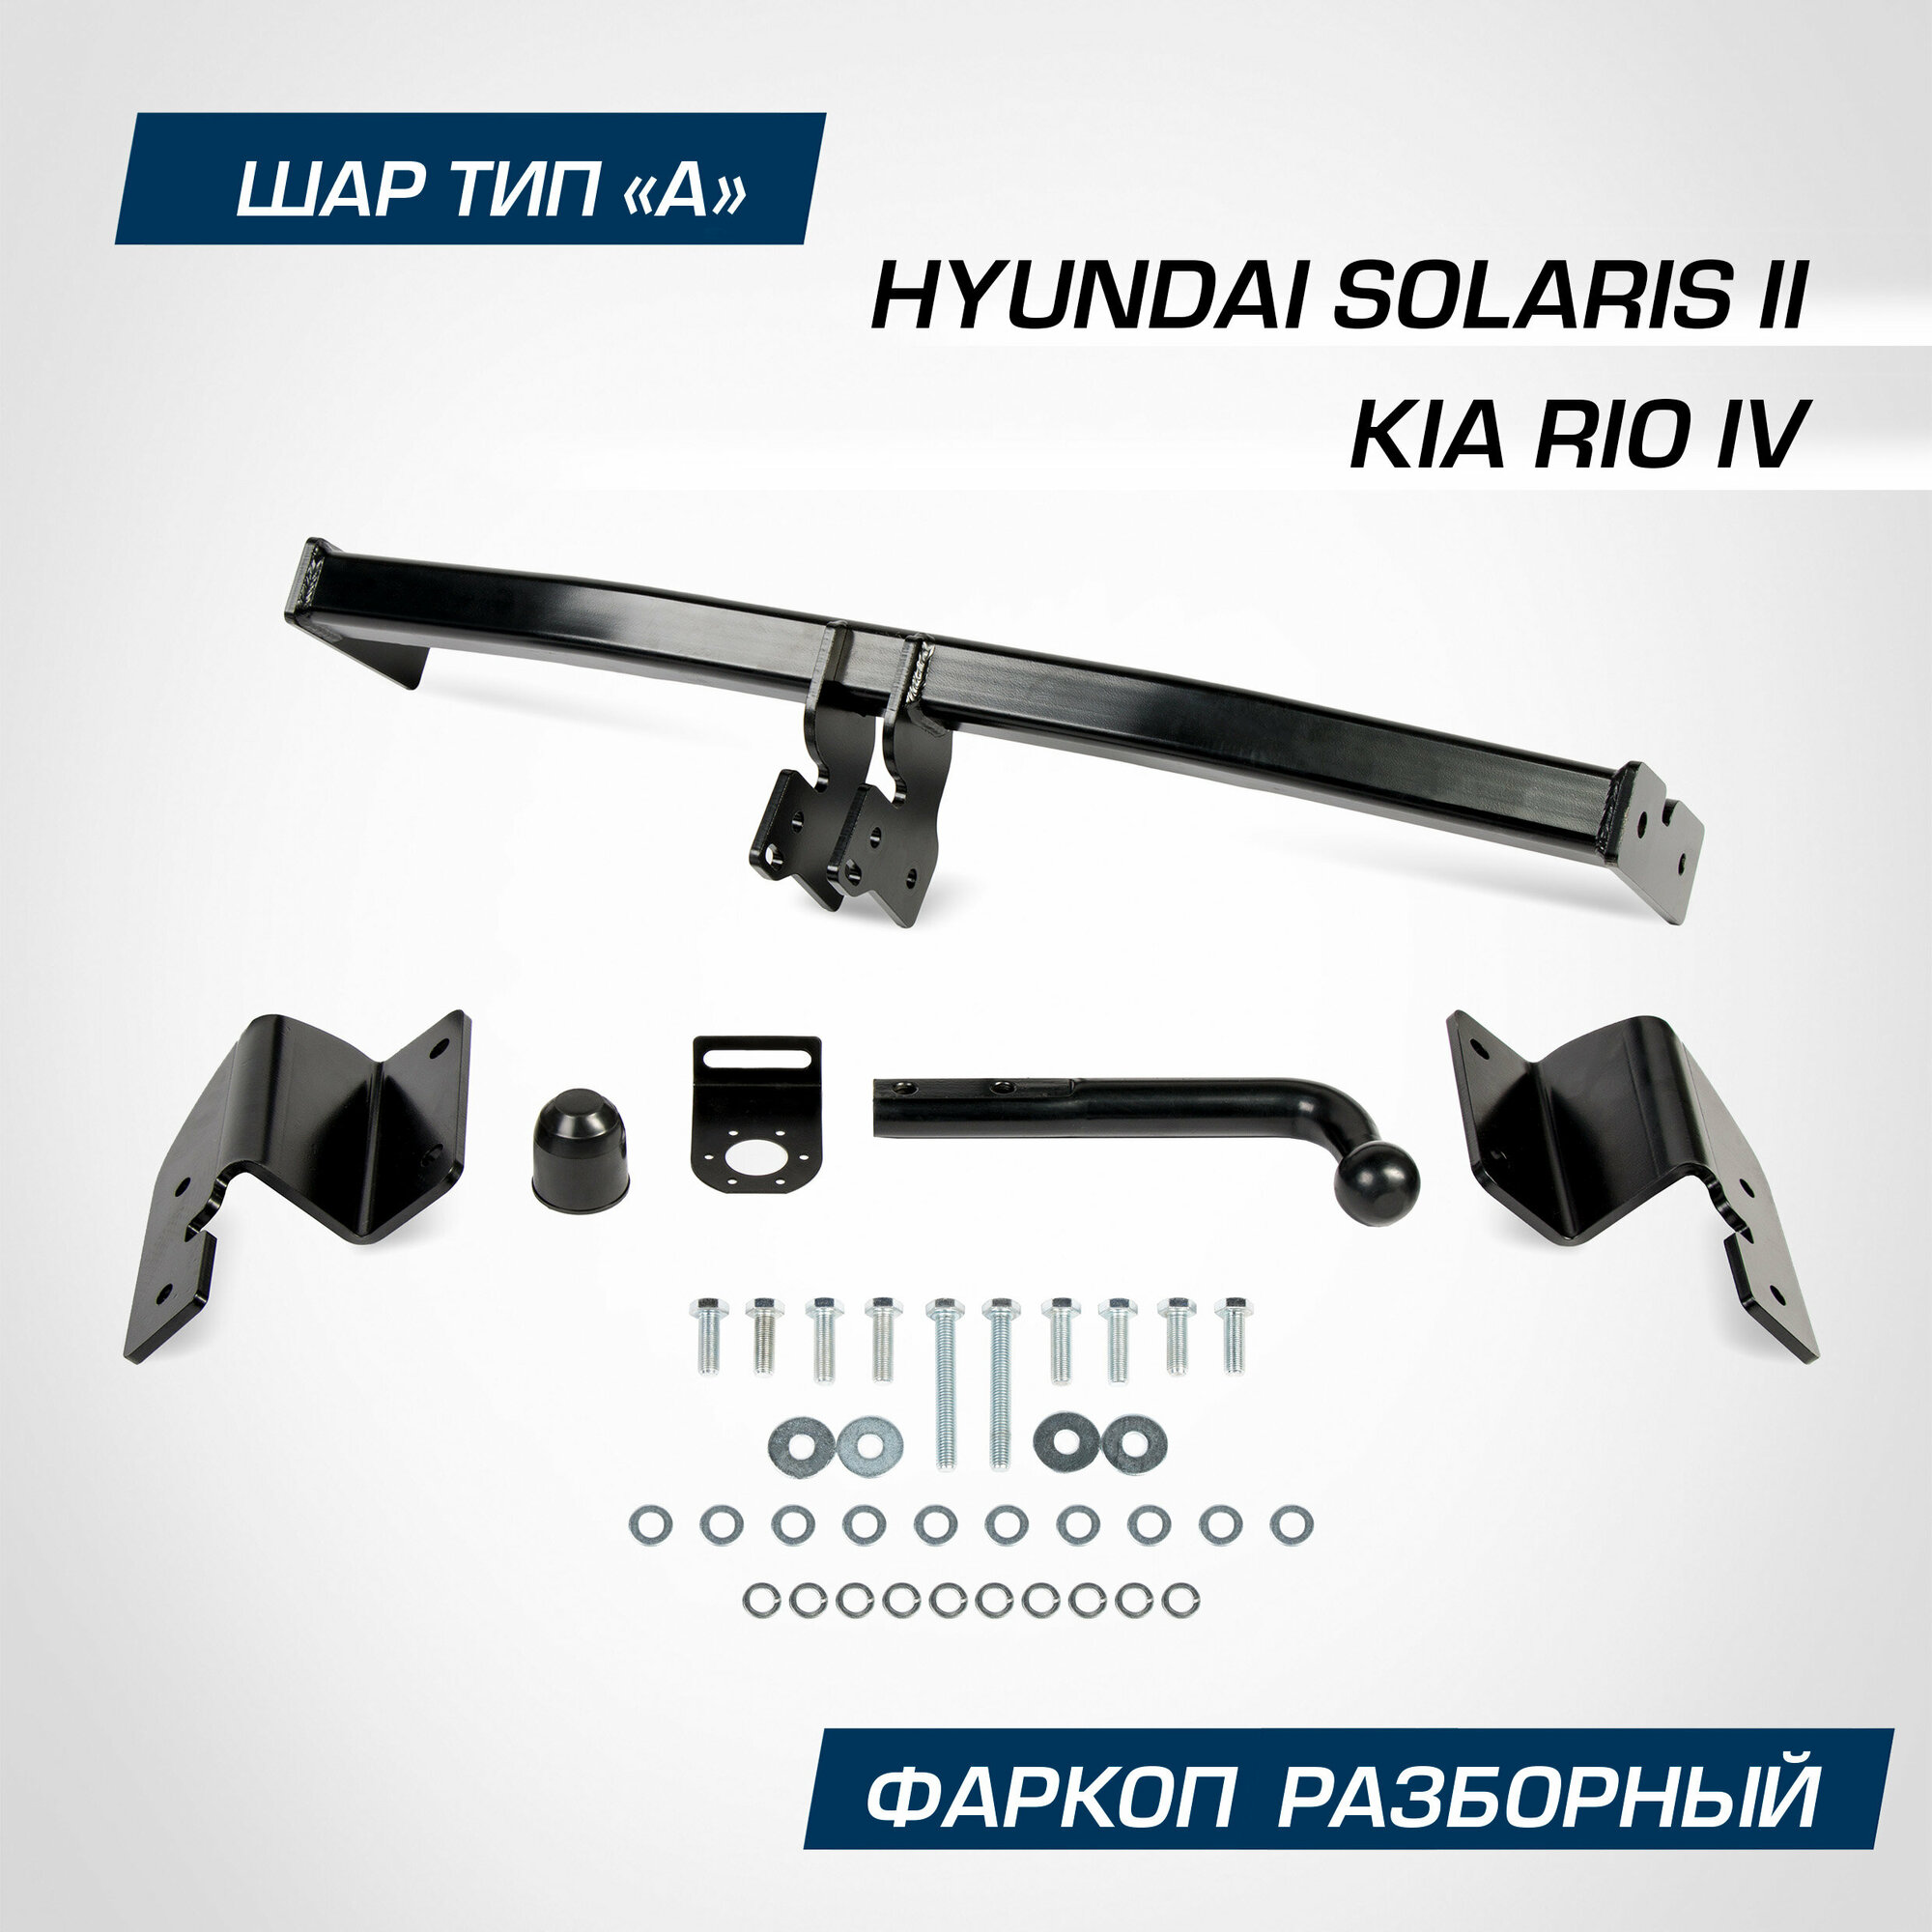 Фаркоп Berg для Hyundai Solaris II поколение 2017-2020 2020-н. в./Kia Rio IV поколение 2017-2020 2020-н. в, шар А, 1200/75 кг, F.2311.001